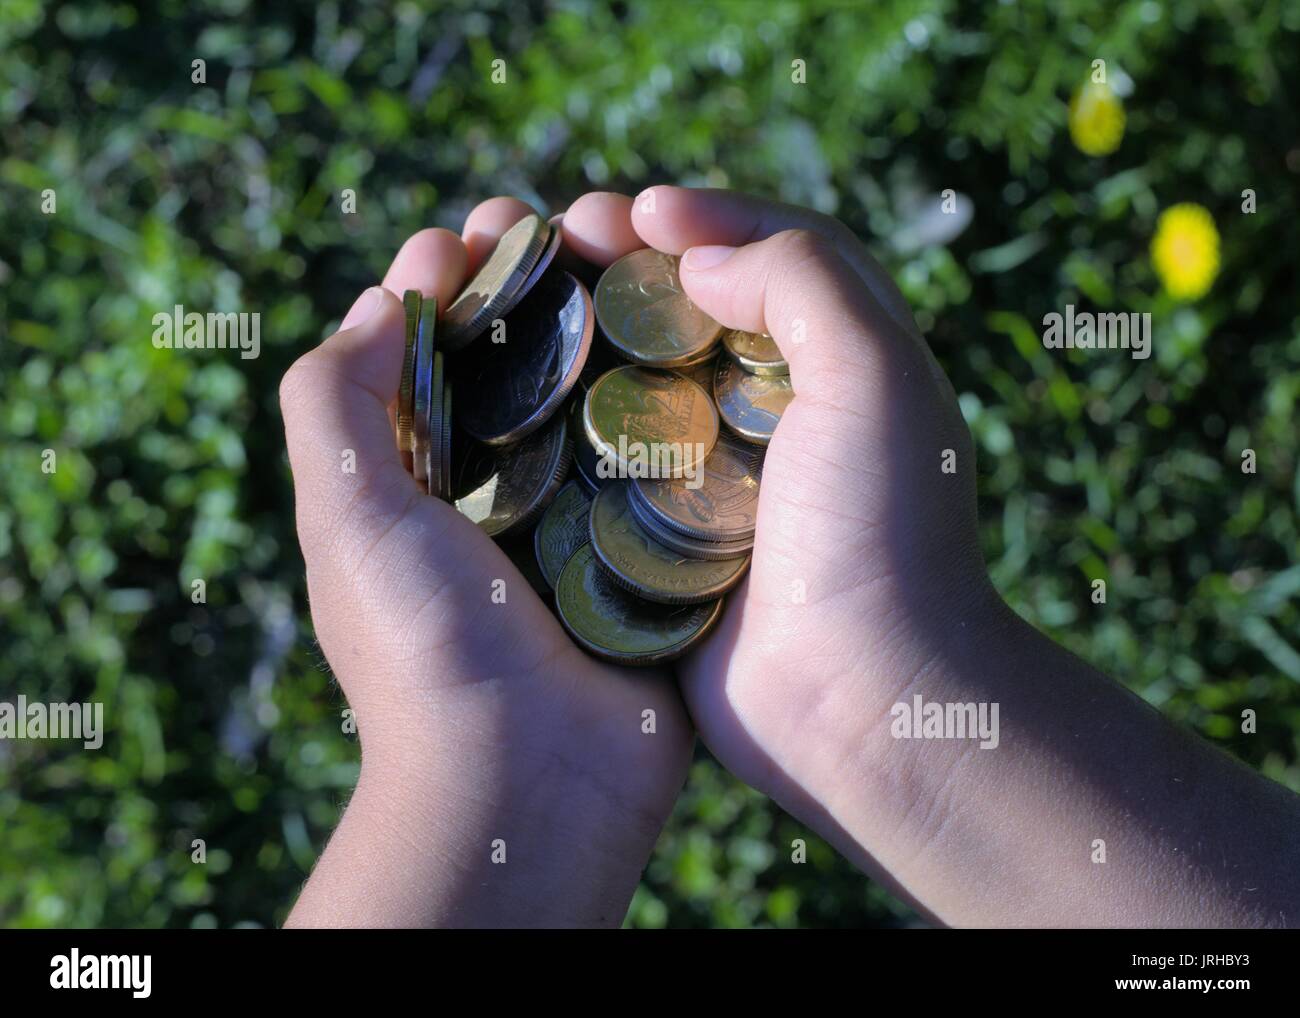 Two hands full of money. Kid's hands are full of Australian money Stock Photo